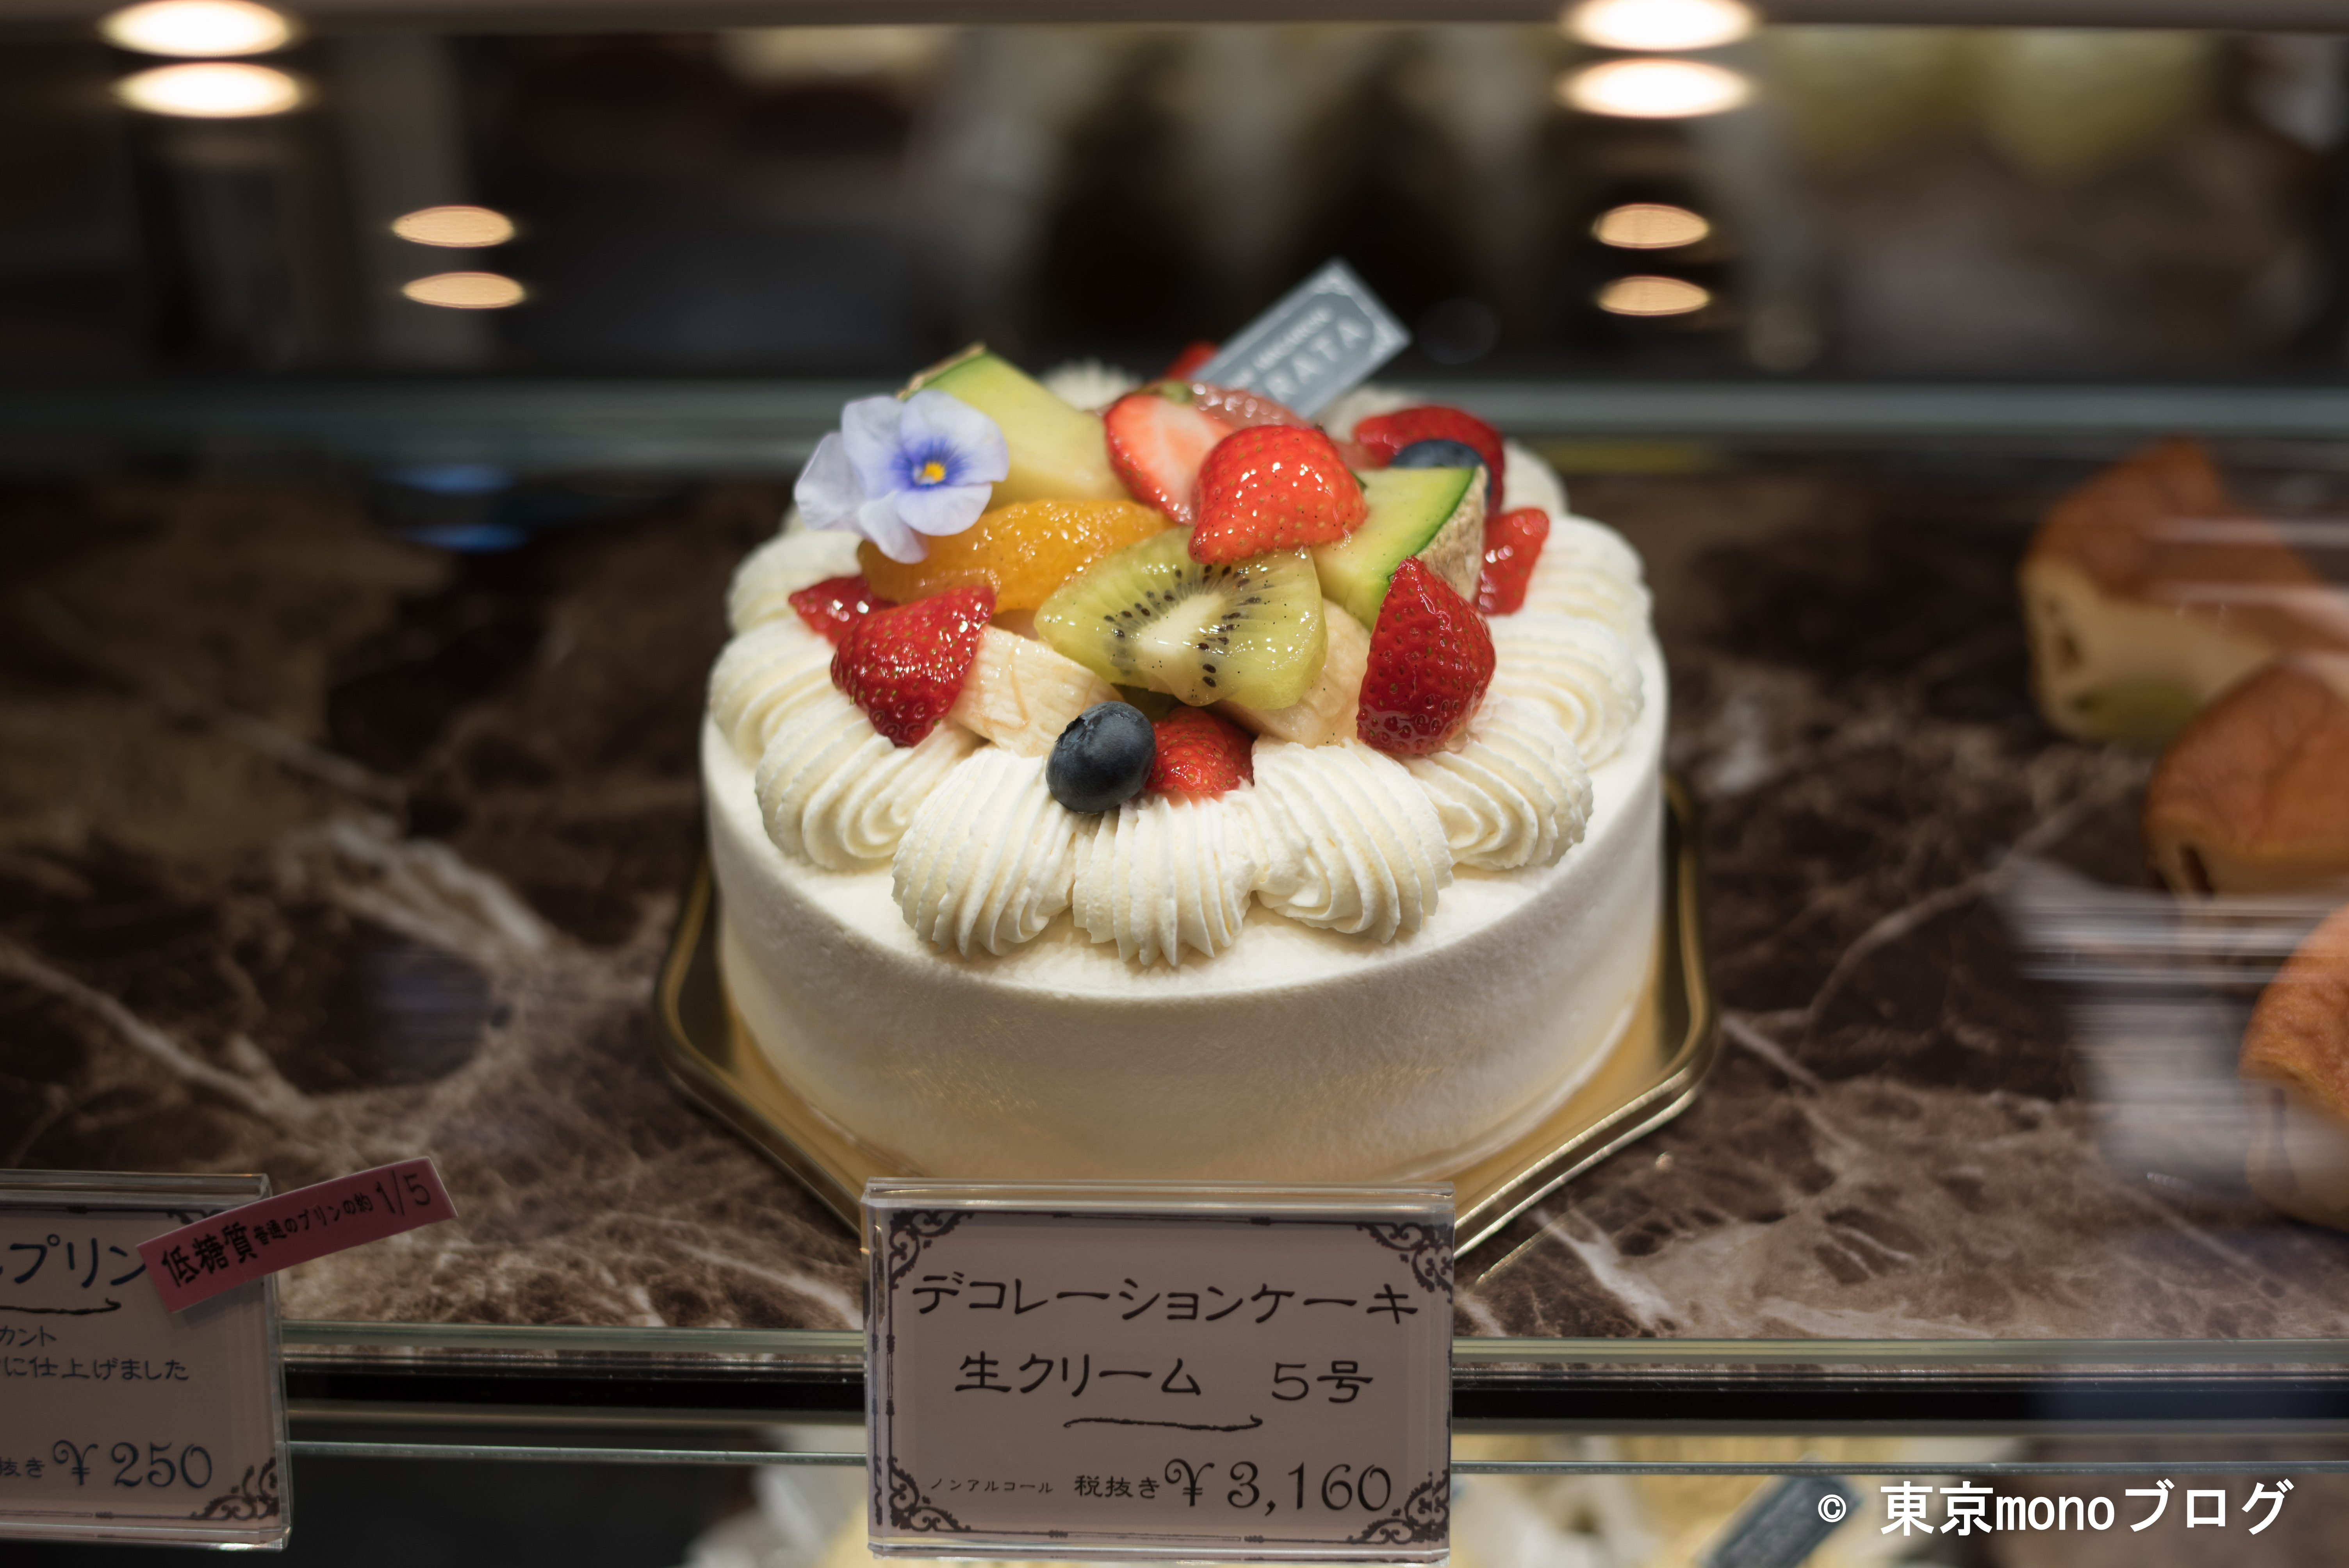 マカロンが有名な人気店murata カズノリムラタ に行ってきた 絶品マカロンやケーキのメニューも写真付きで紹介します 東京monoブログ